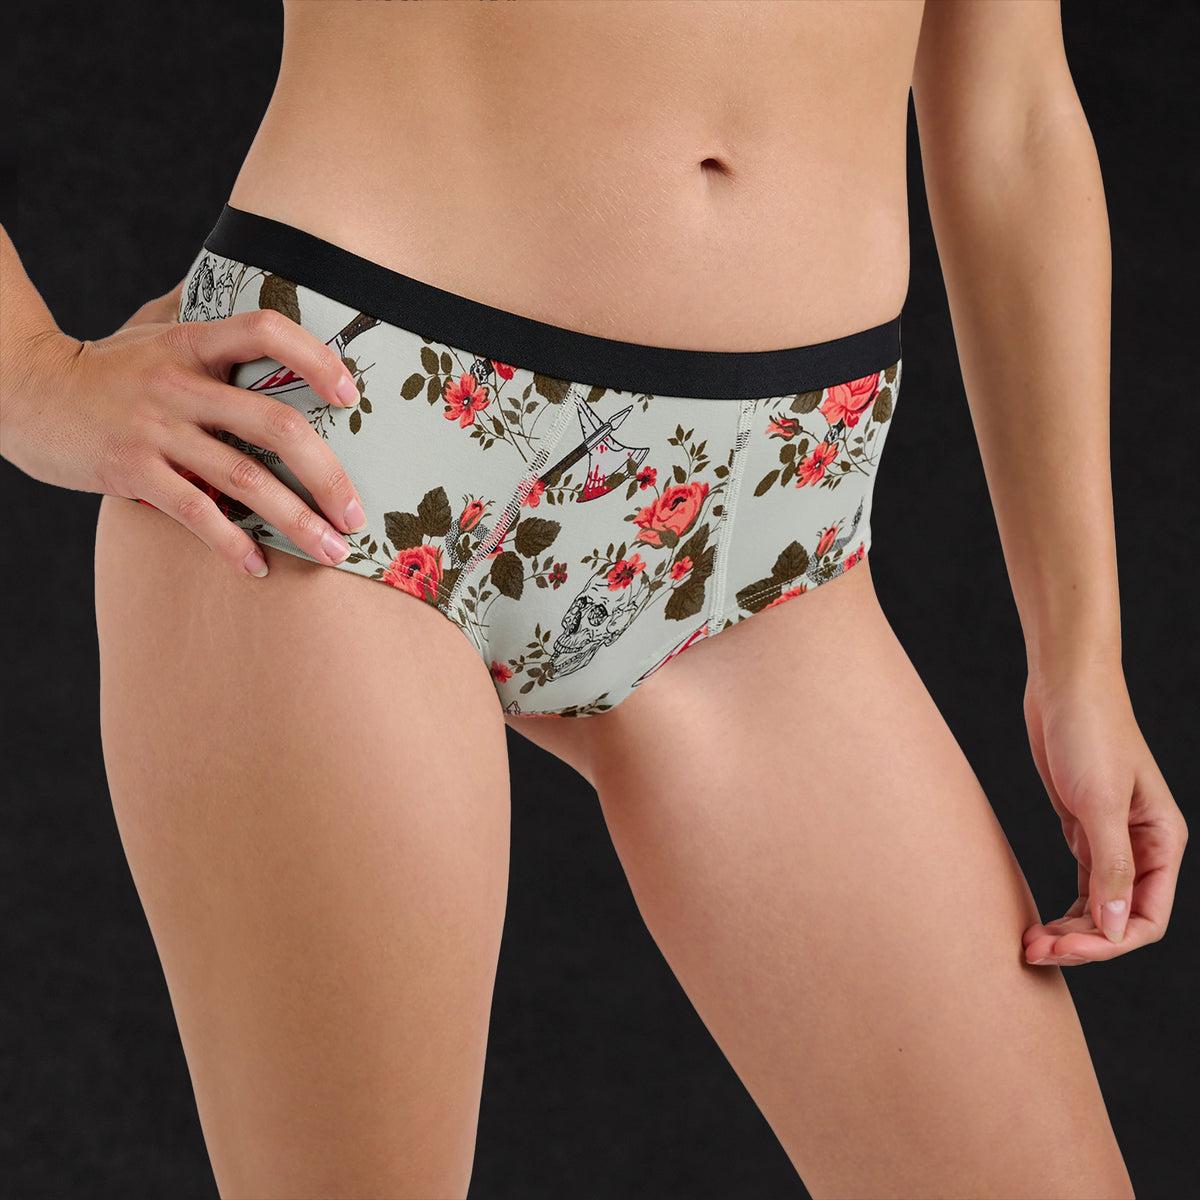 Men's Liquid Cheeky Boxer Briefs Underwear Male U-briefs Brazilain